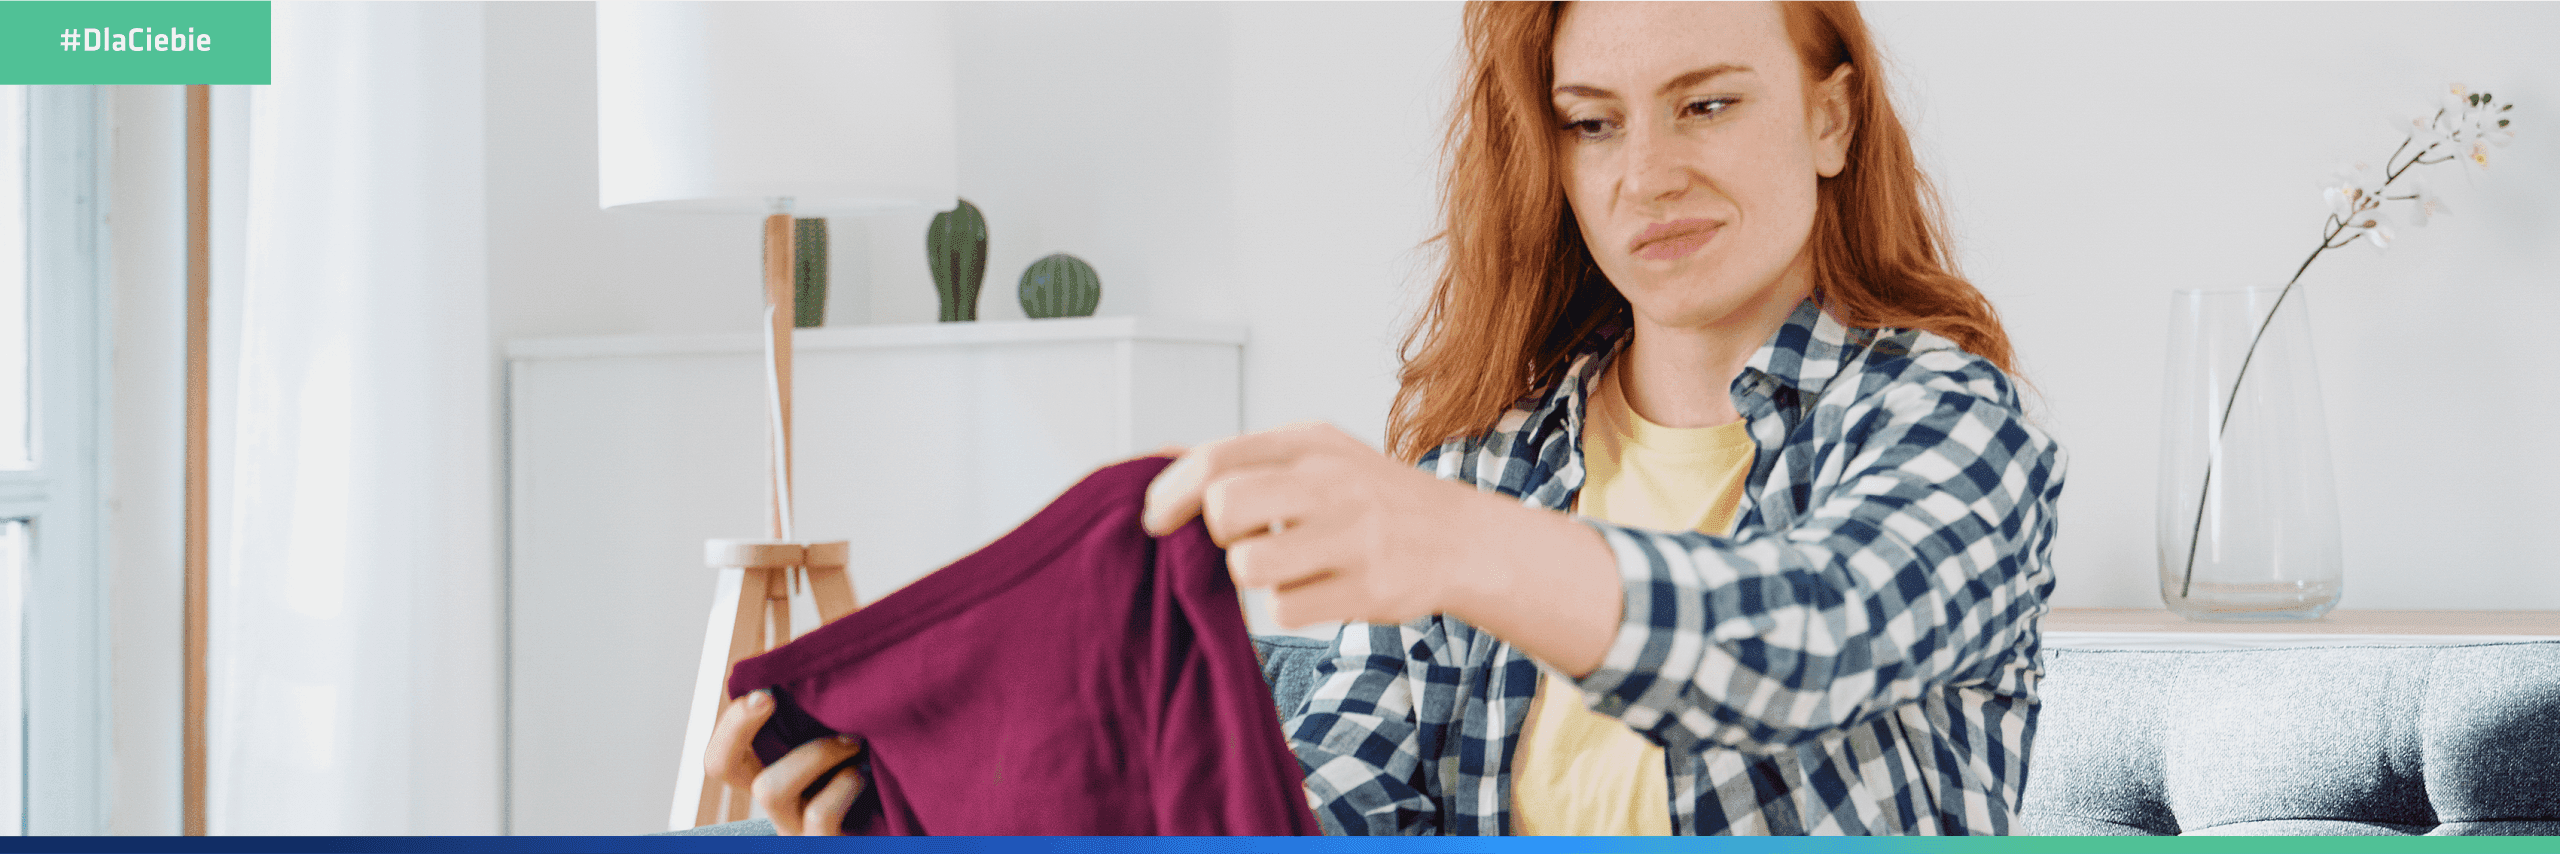 Zwrot towaru: kobieta niezadowolona z zakupu nowej bluzki